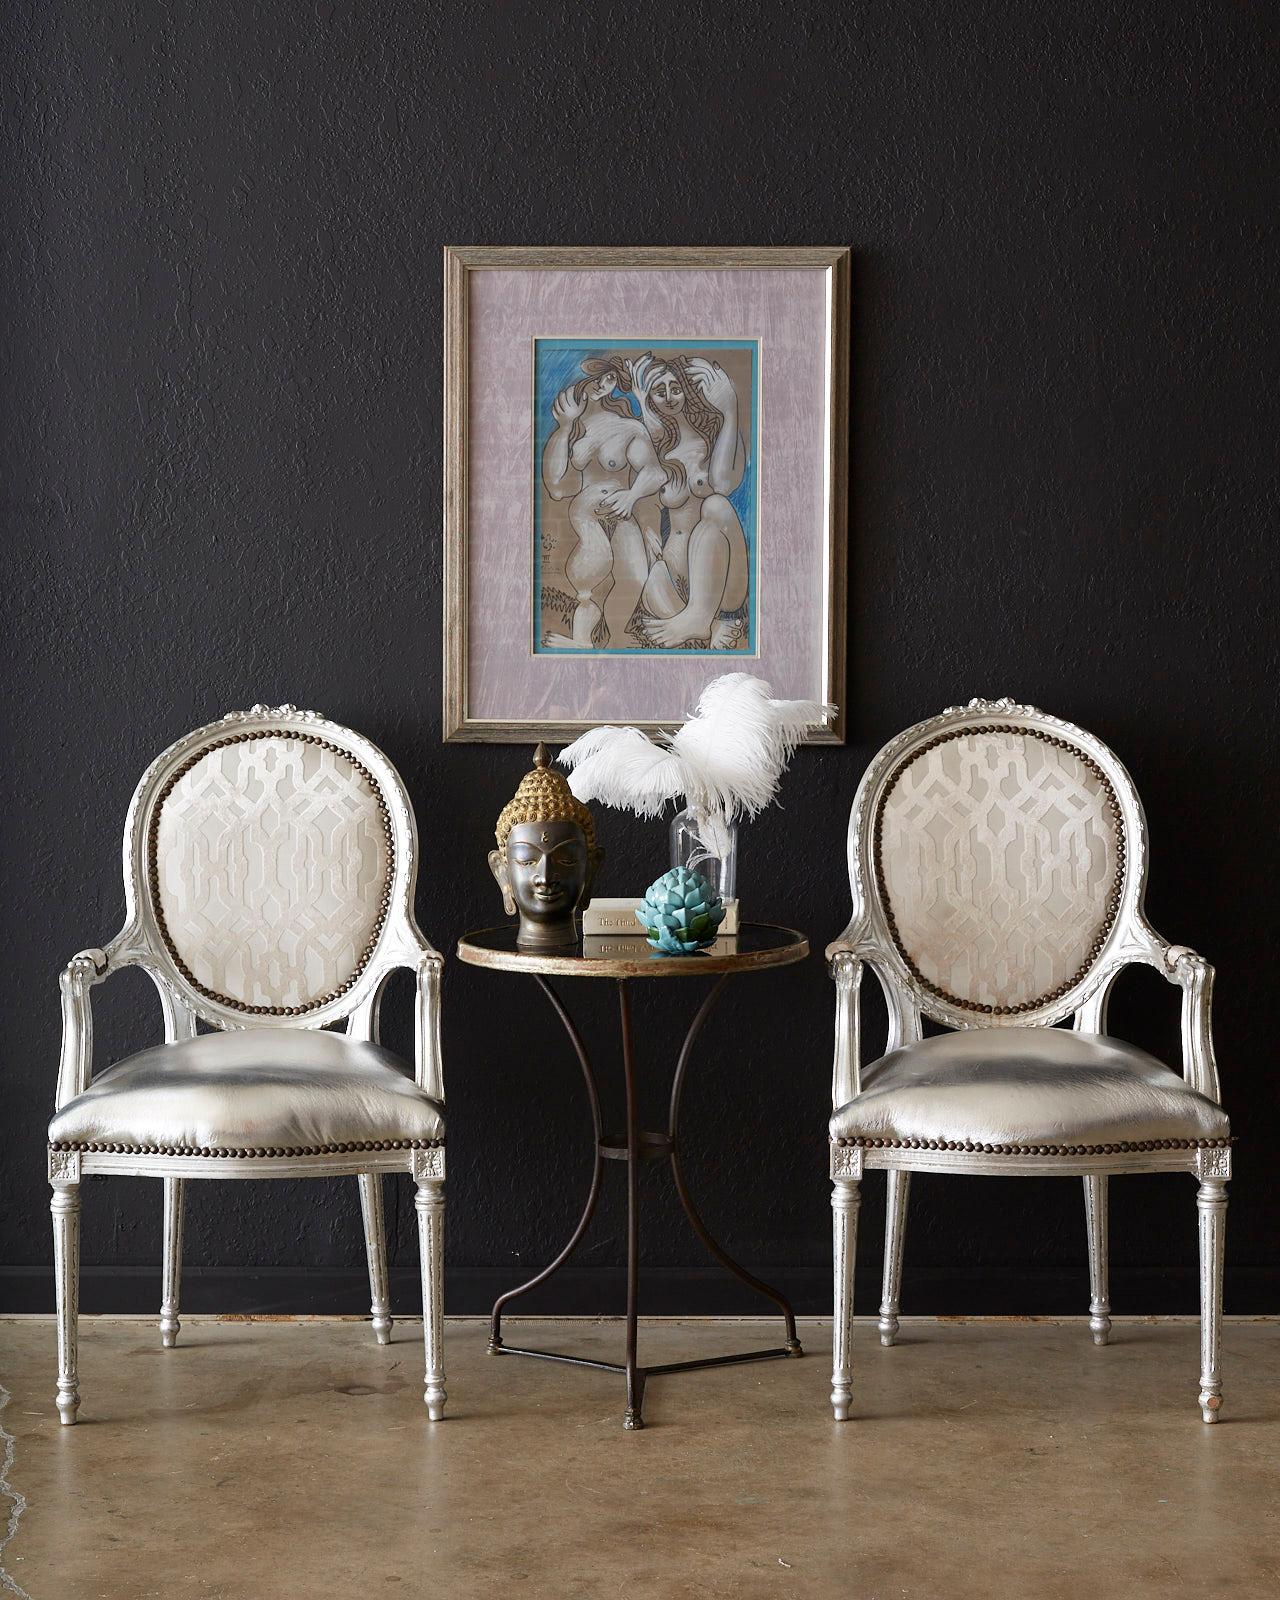 Glänzendes Paar französischer Sessel mit geschnitzten Rahmen im Louis-XVI-Stil, die in mühevoller Handarbeit mit Blattsilber veredelt wurden. Die Gestelle sind mit einem passenden silberfarbenen Metallic-Stoff auf der Sitzfläche und einem